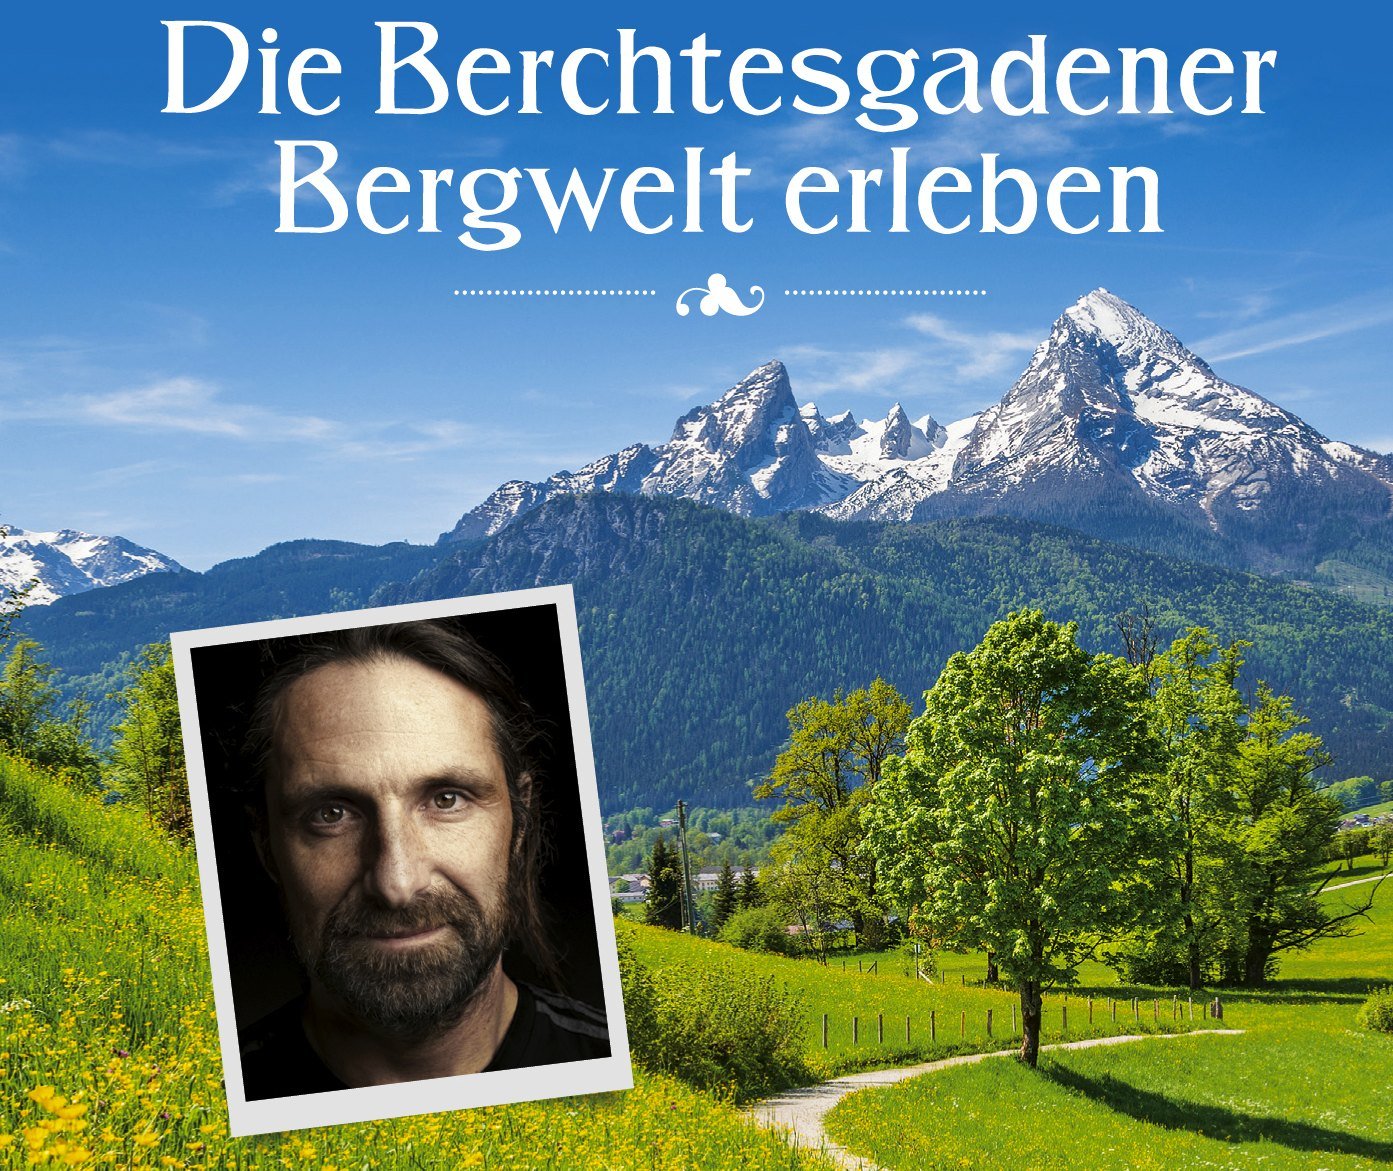 Buchtipp – Servus Verlag: Wandern mit den Huberbuam – 27 Touren in den Berchtesgadener Alpen